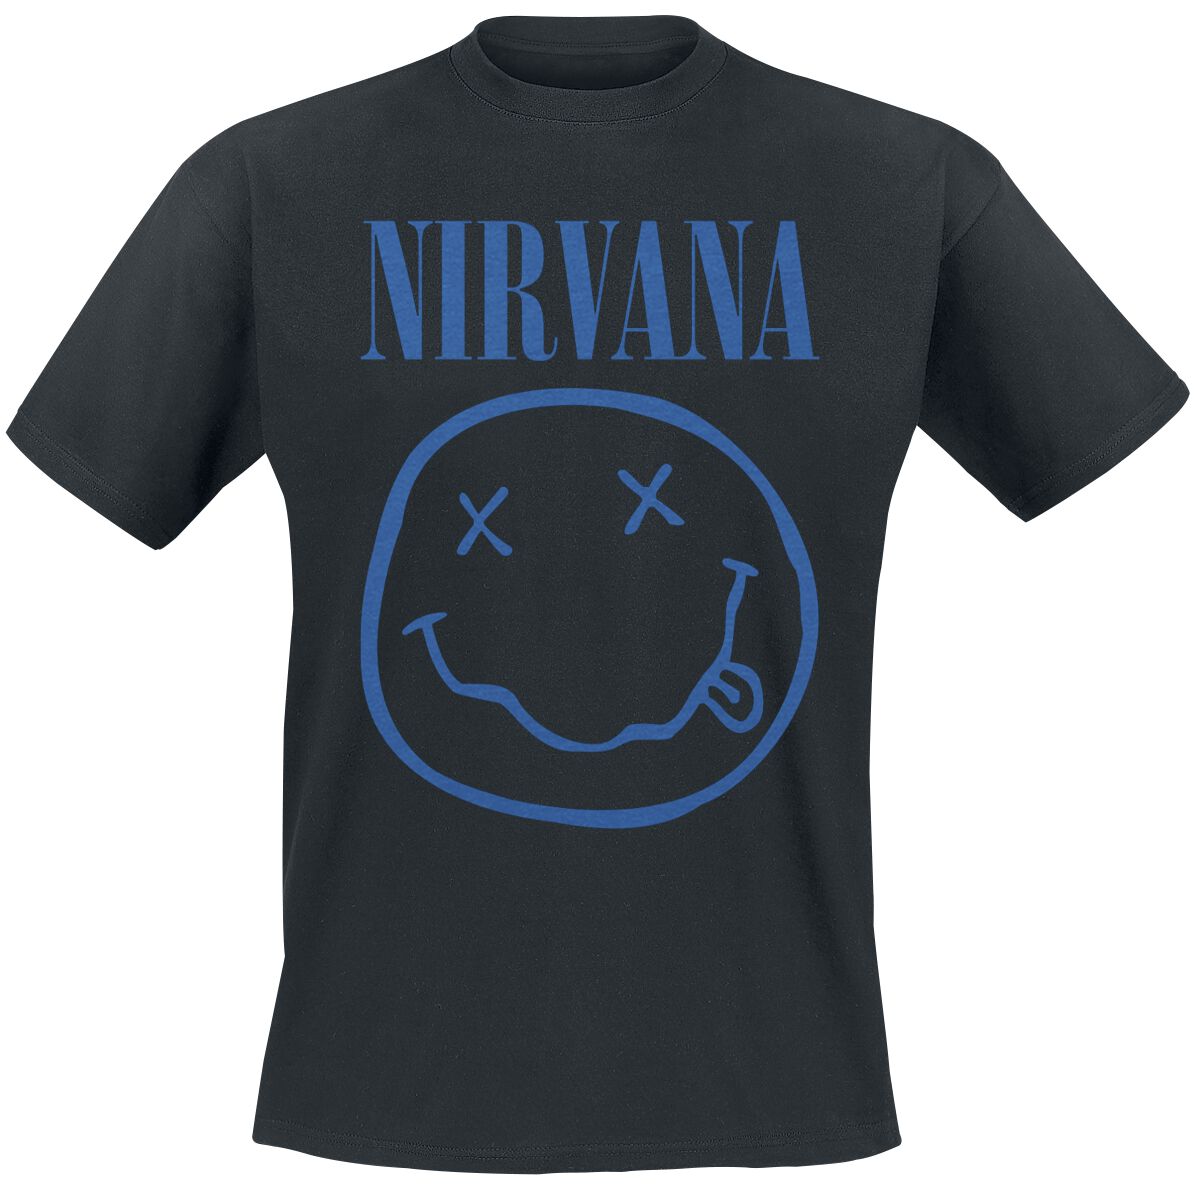 Nirvana T-Shirt - Blue Smiley - S bis XXL - für Männer - Größe M - schwarz  - Lizenziertes Merchandise!